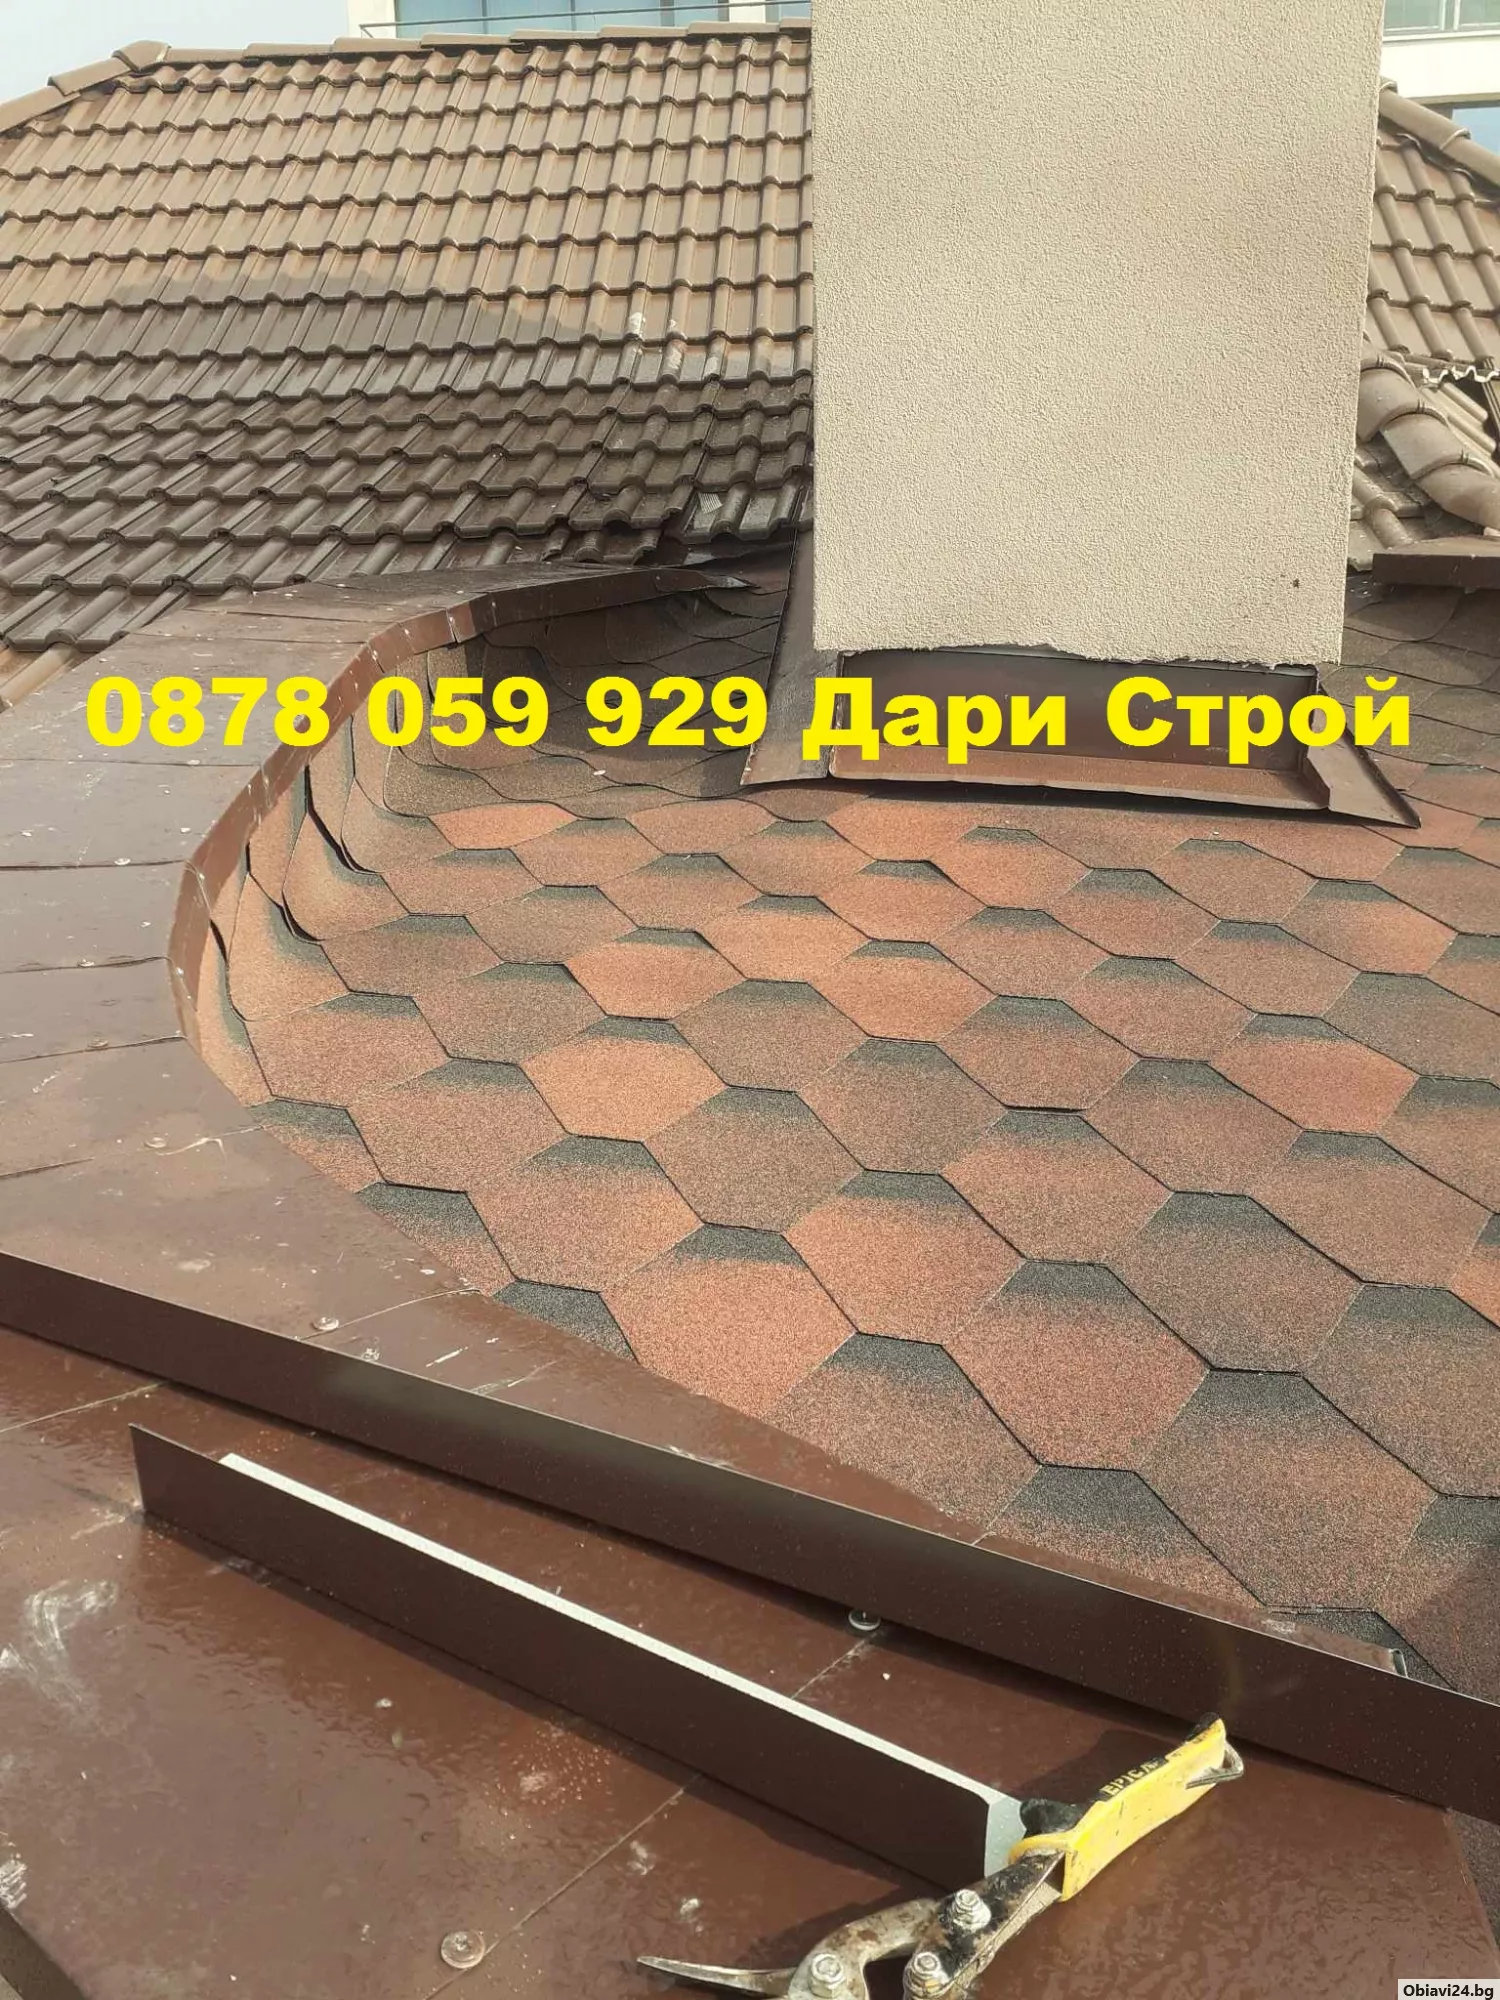 Ремонт на покриви от бригада Дари Строй - obiavi24.bg